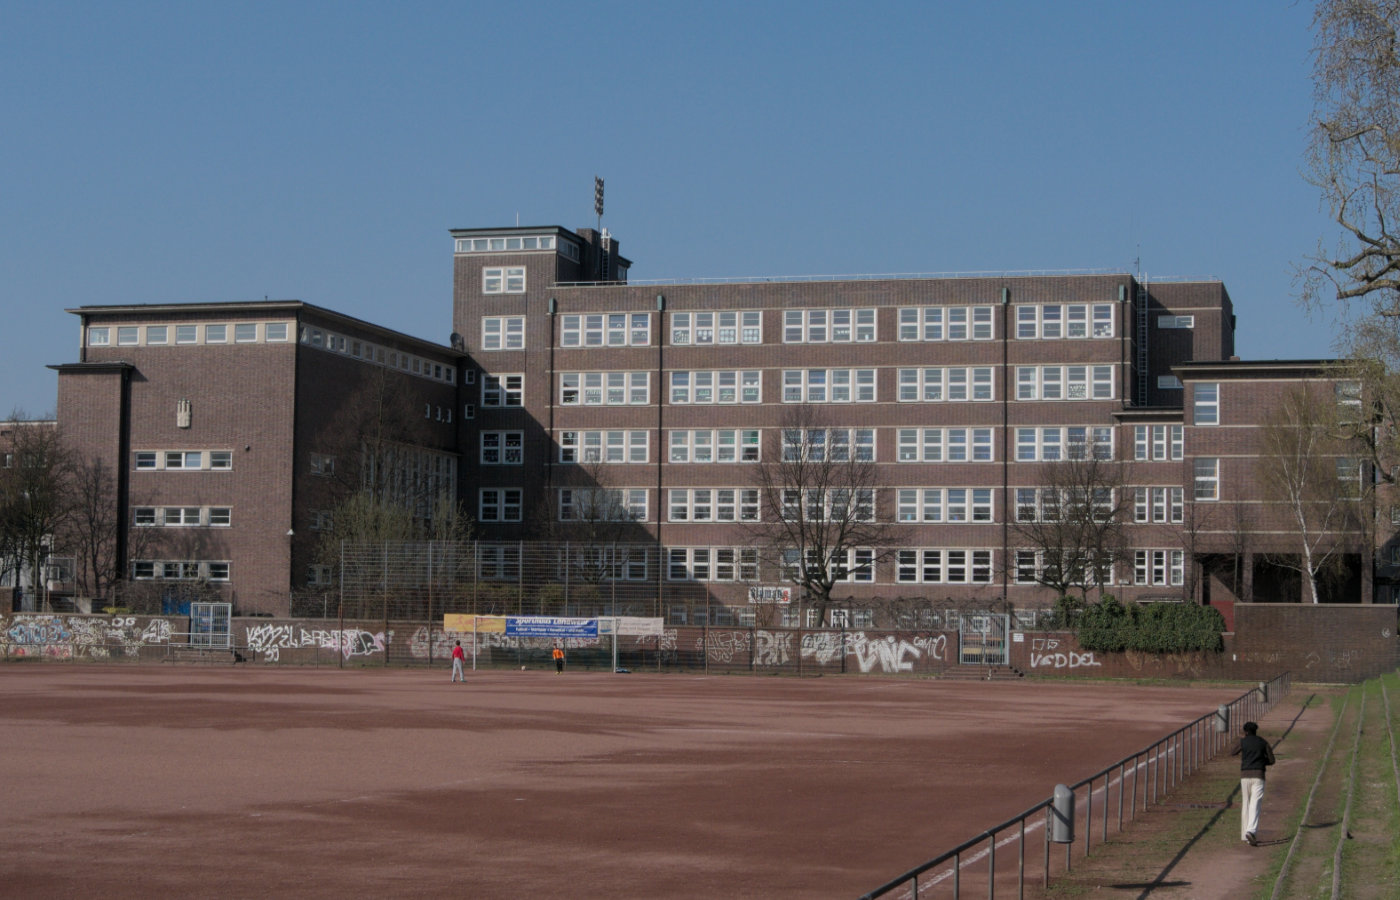 Neubau, Umbau und Sanierung von Schulgebäuden, Hamburg 2